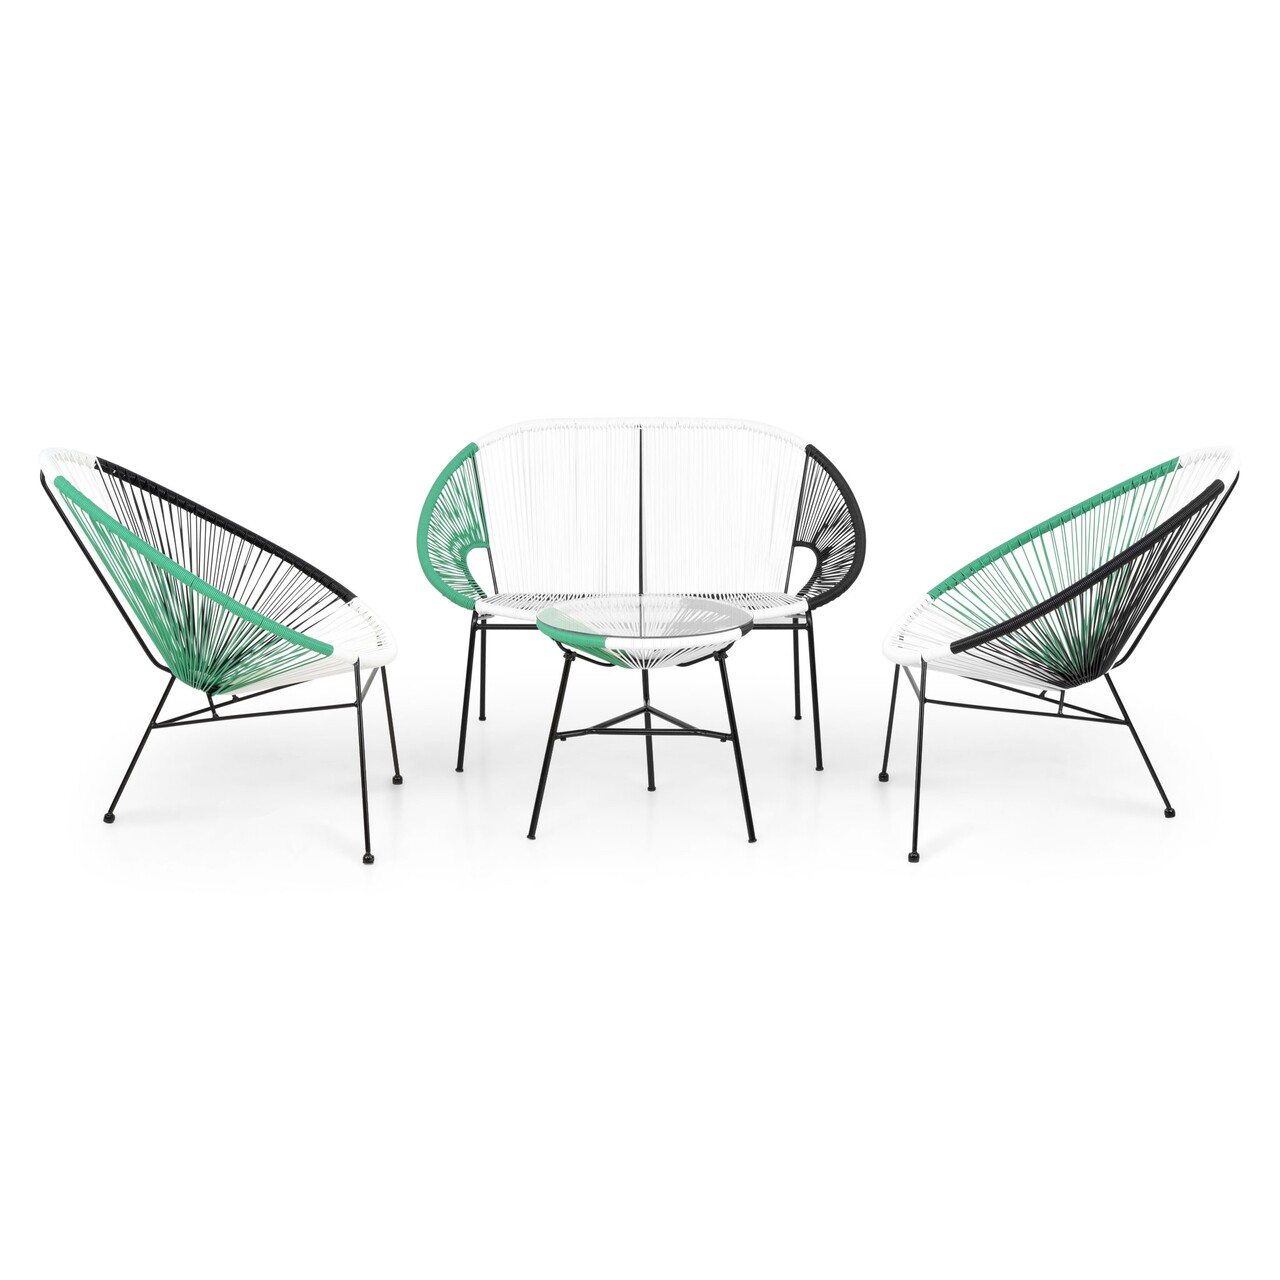 Corfu/Kerti terasz bútor szett, 2 db fotel kanapéval és asztalka, acél, zöld/fehér/fekete